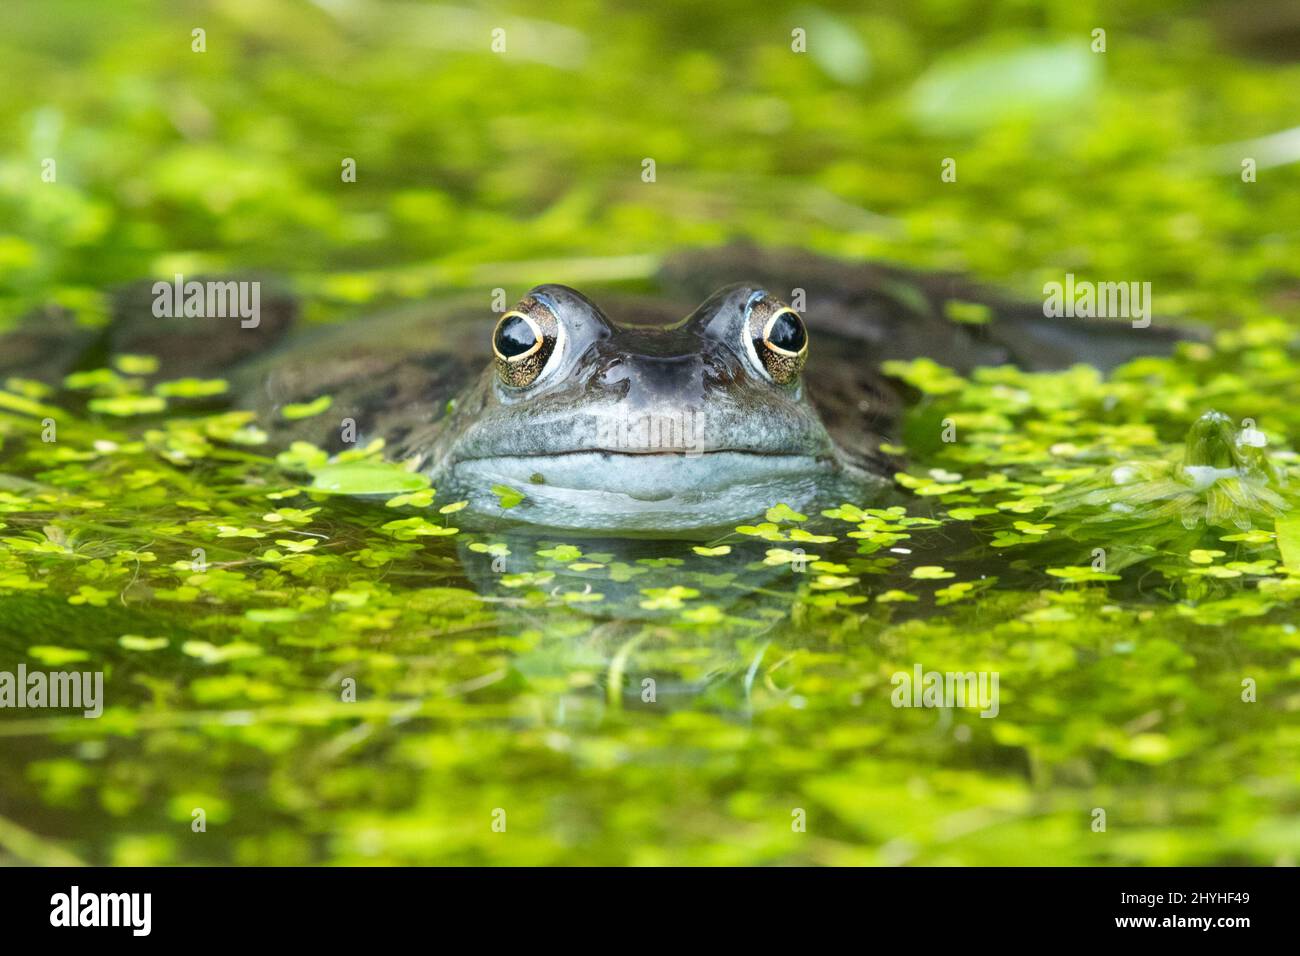 Grenouille - grenouille commune - rana temporaria - entourée de duckweed dans l'étang de jardin - Écosse, Royaume-Uni Banque D'Images